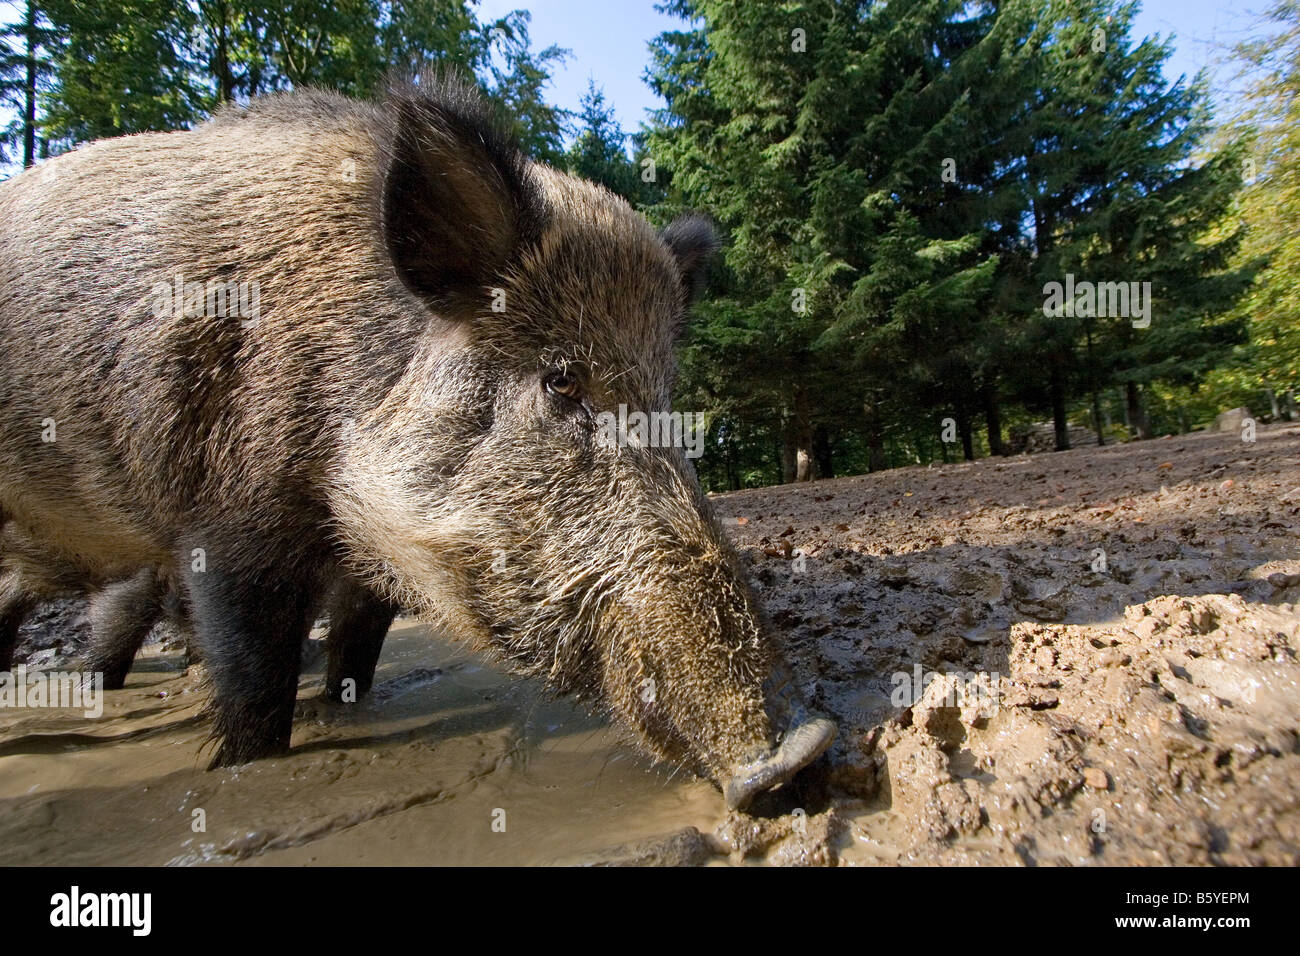 Wildlife park daun hi-res stock photography and images - Alamy